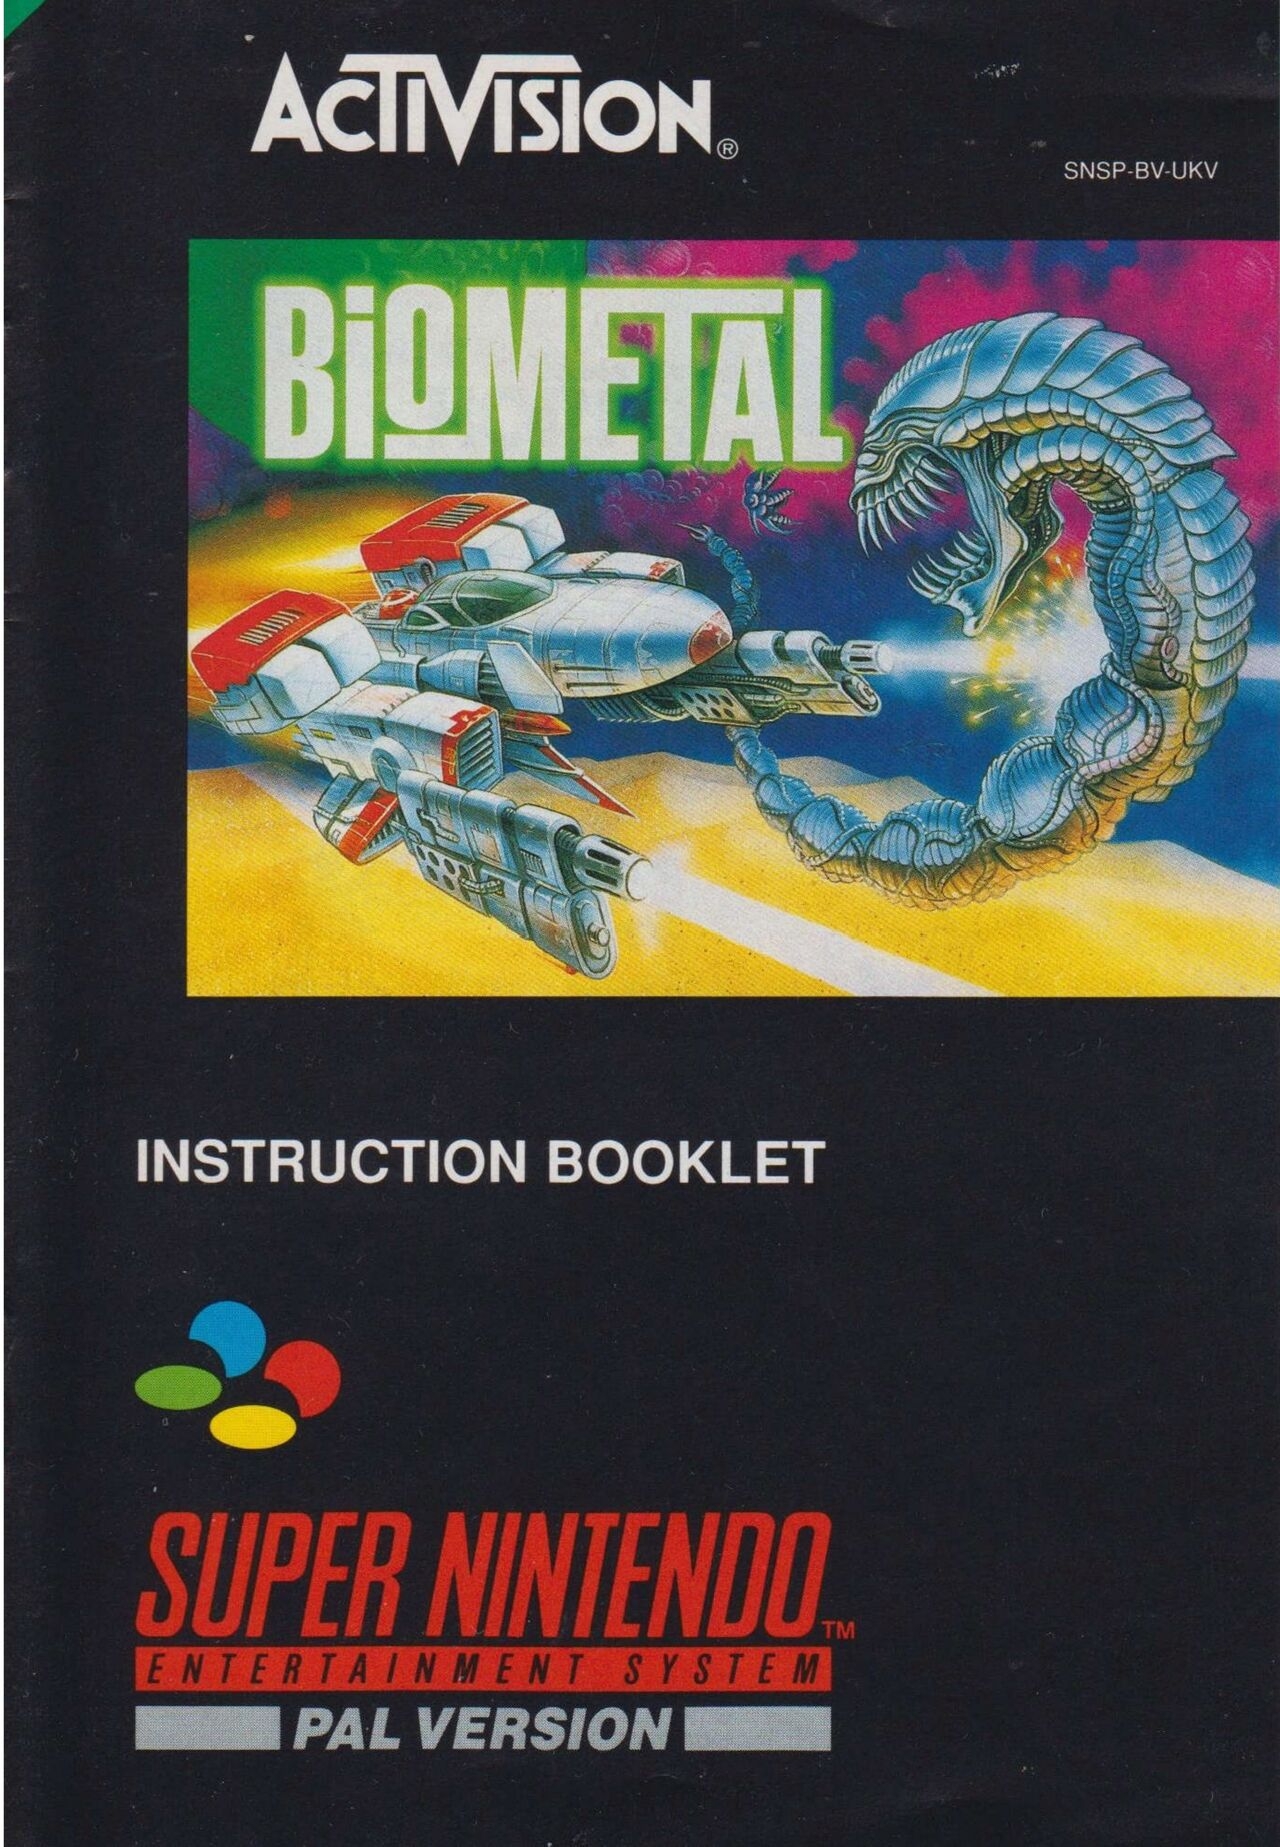 BioMetal (1993) - SNES Manual 0